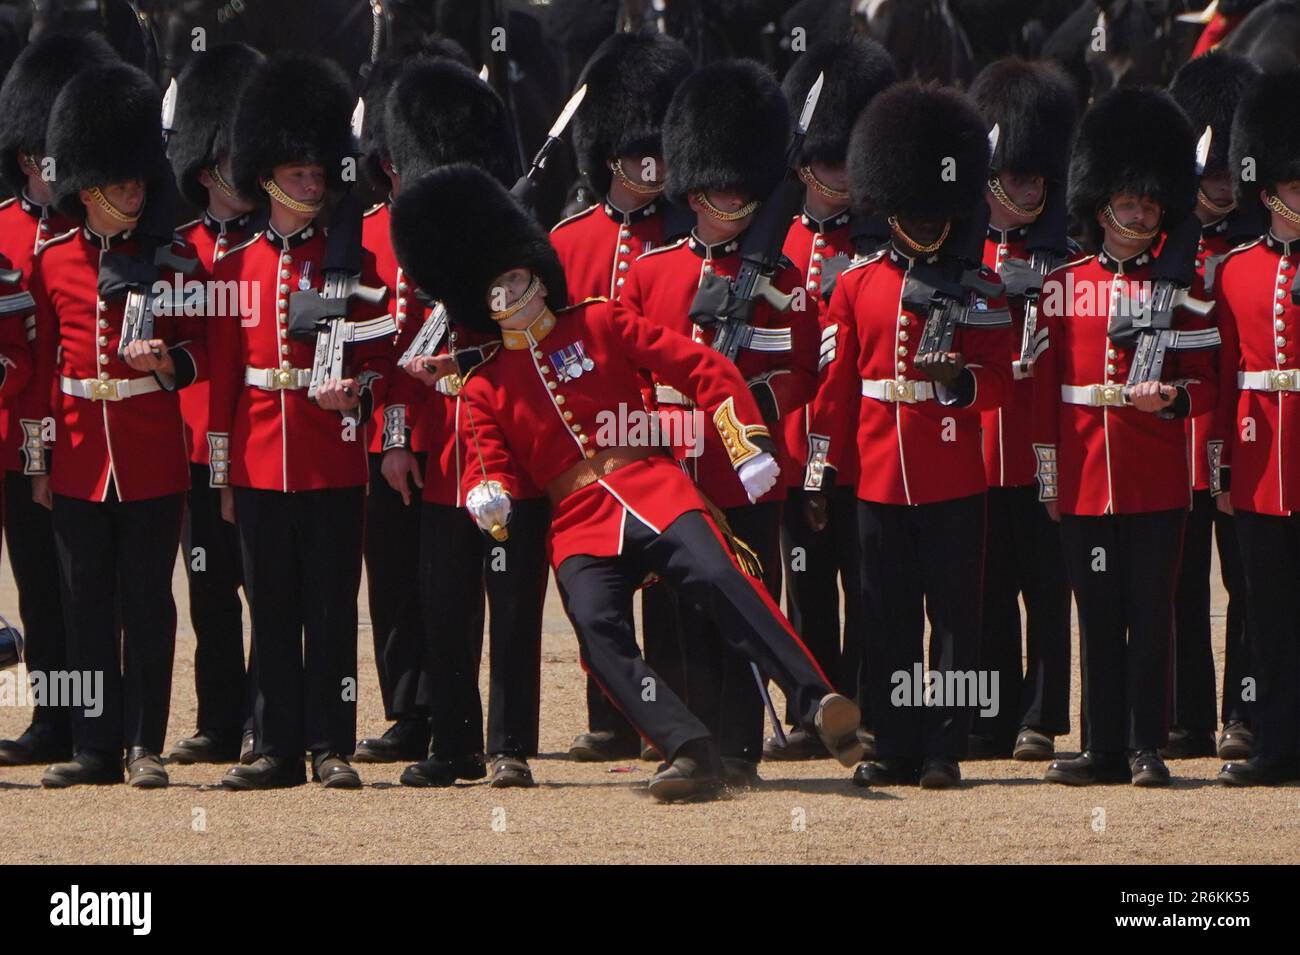 Bild 3 von 8 in einer Sequenz, in der ein Mitglied des Militärs ohnmächtig wird, aufgrund der Hitze während des Colonels Review, für Trooping the Colour, bei der Horse Guards Parade in London, vor der King's Birthday Parade am 17. Juni. Foto: Samstag, 10. Juni 2023. Stockfoto